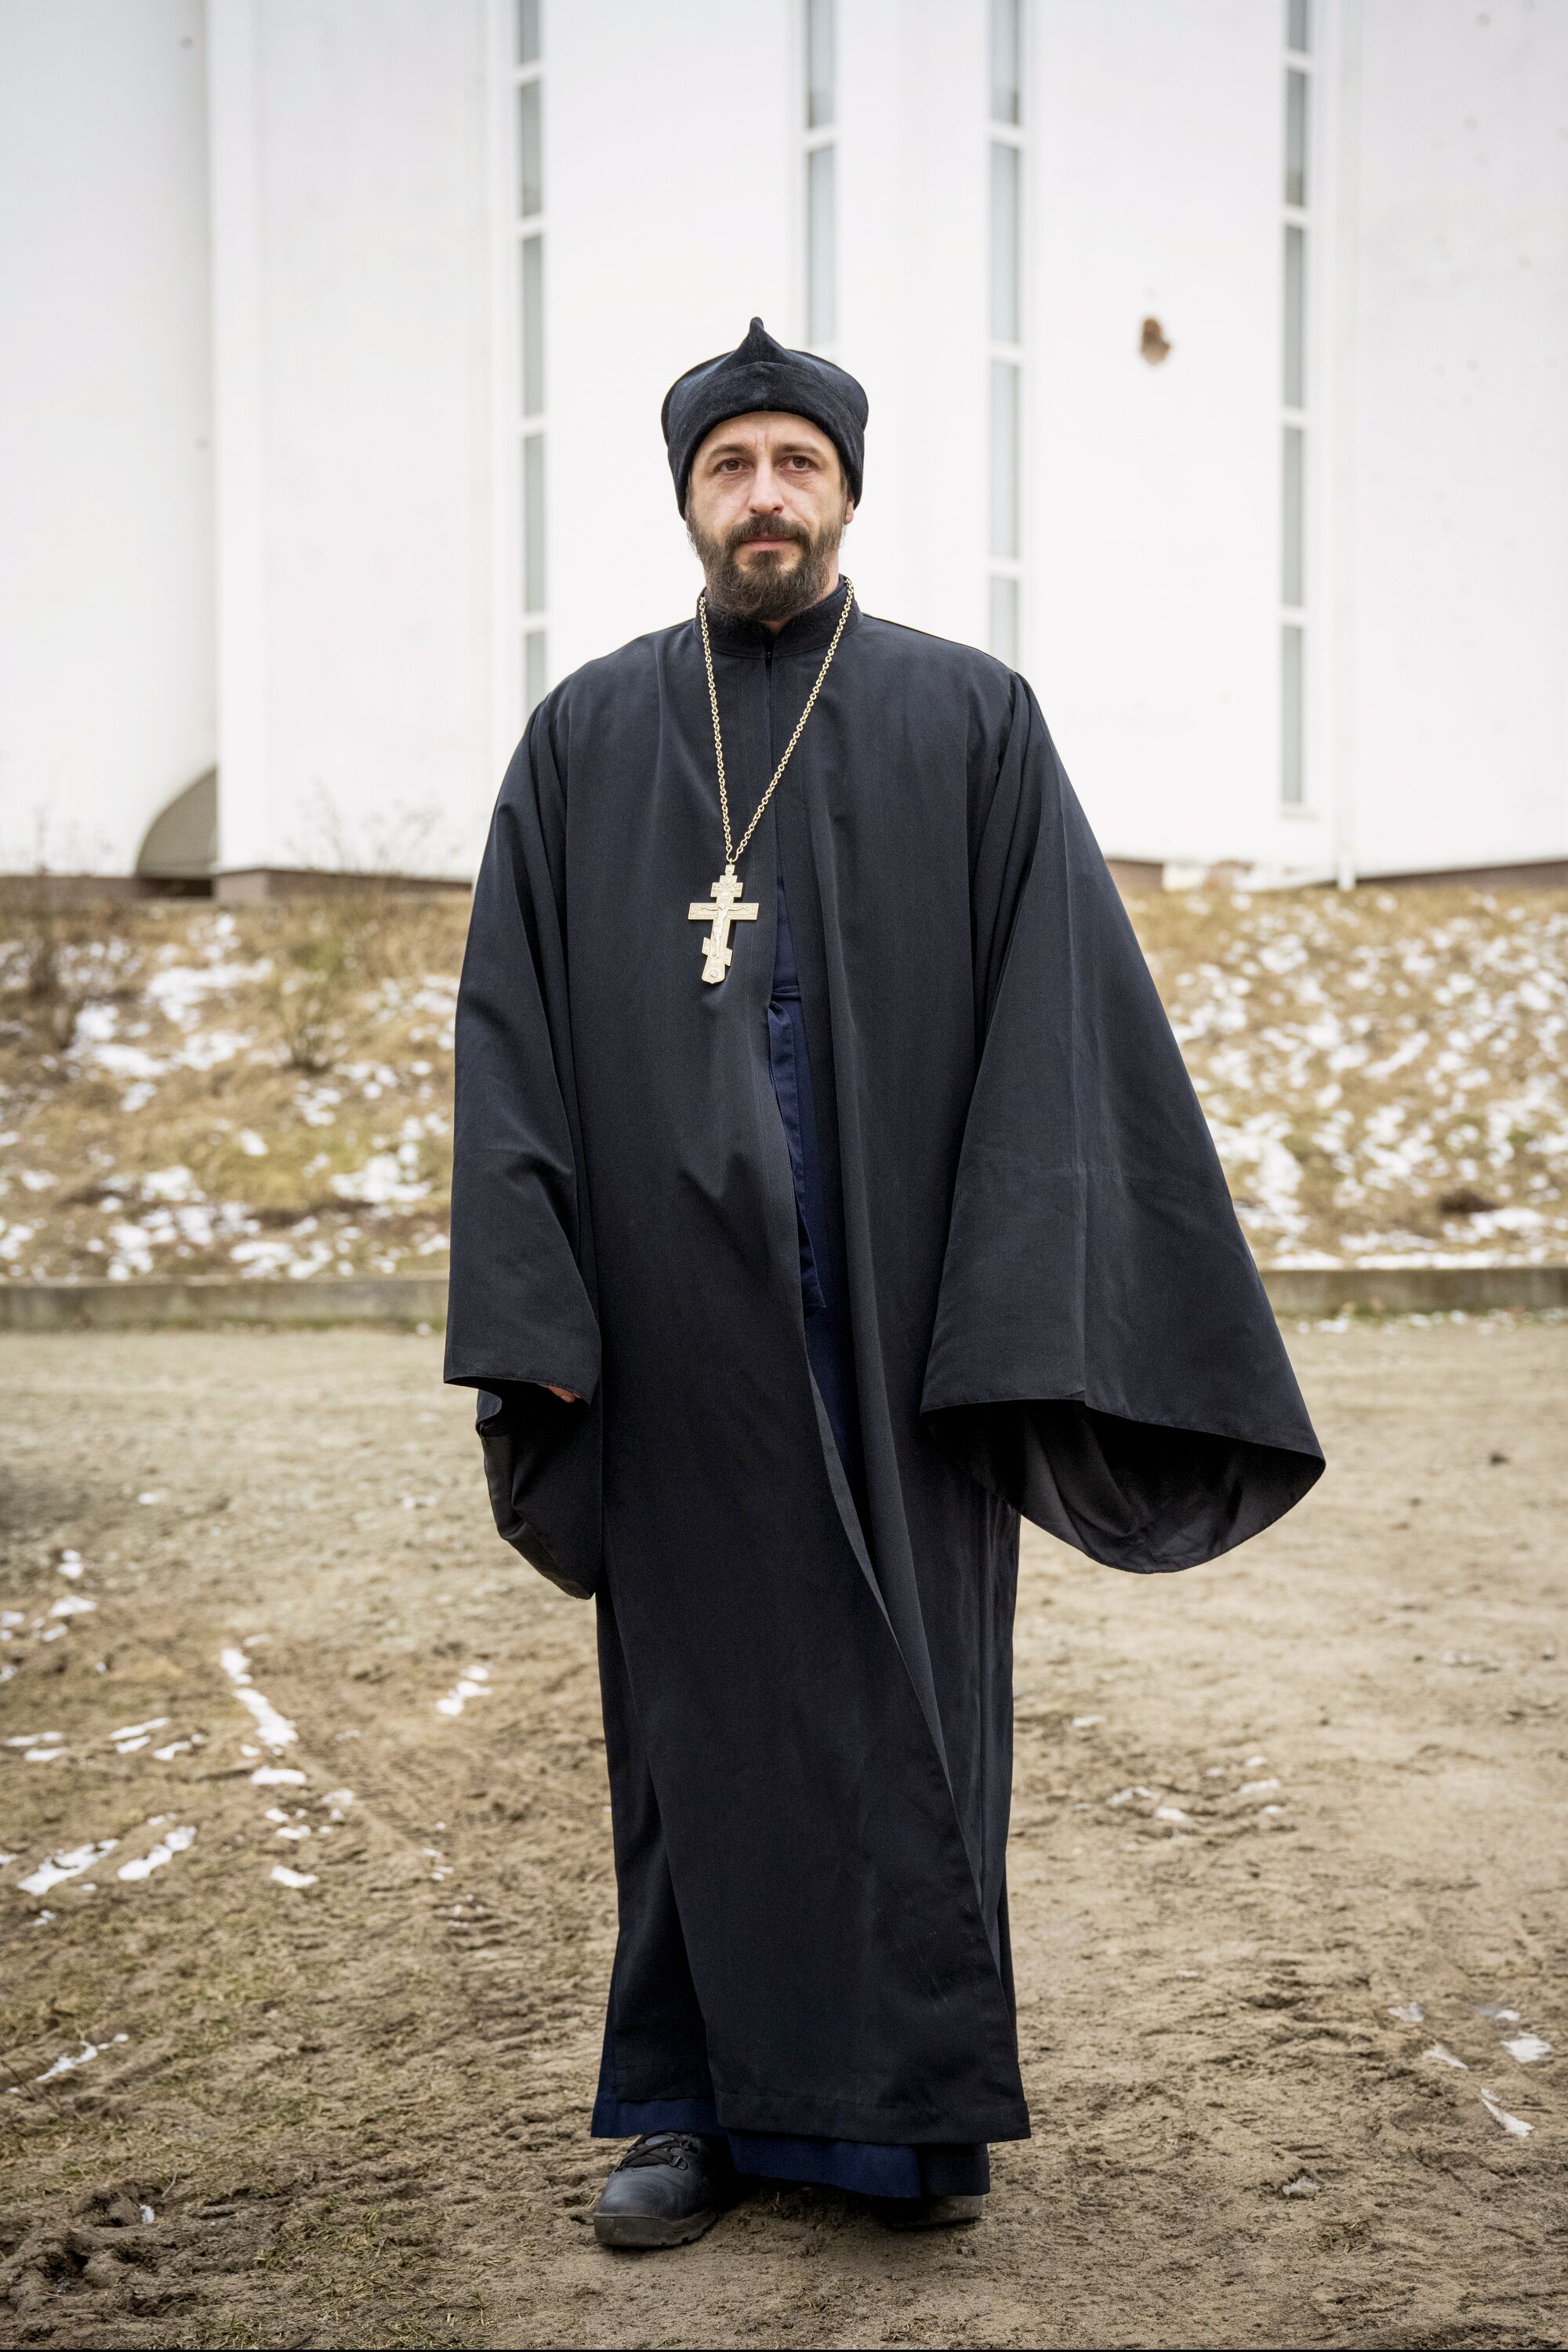 एक पुजारी, काले वस्त्र, काली टोपी पहने, और एक श्रृंखला पर एक बड़ा क्रॉस पहने हुए, एक चित्र के लिए प्रस्तुत करता है।